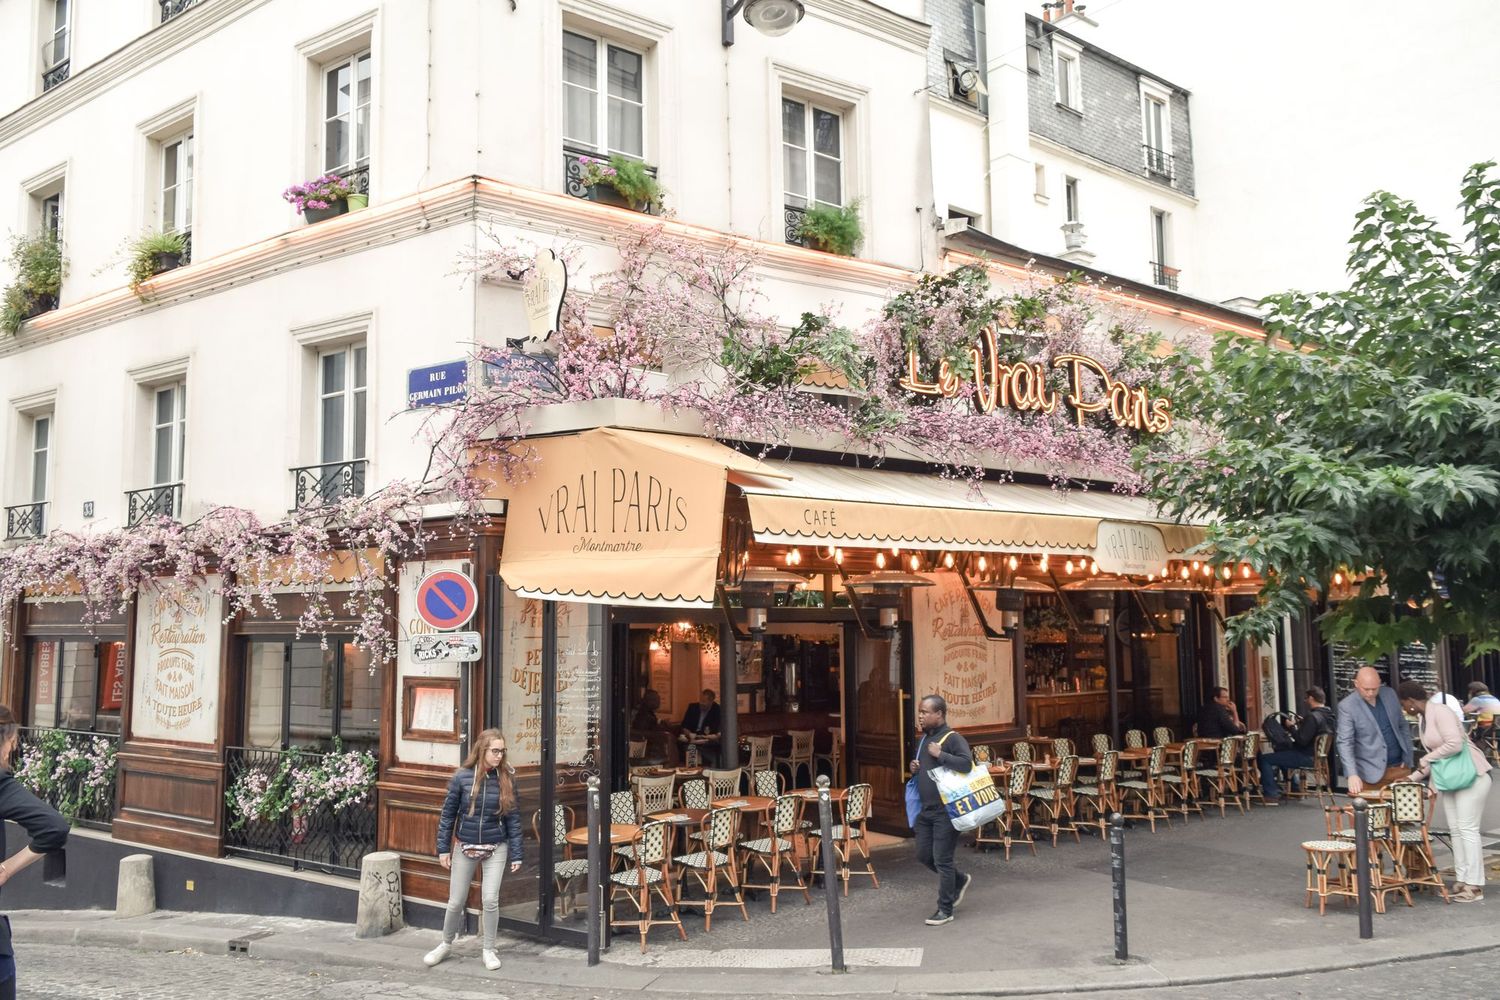 Le Vrai Paris Restaurant